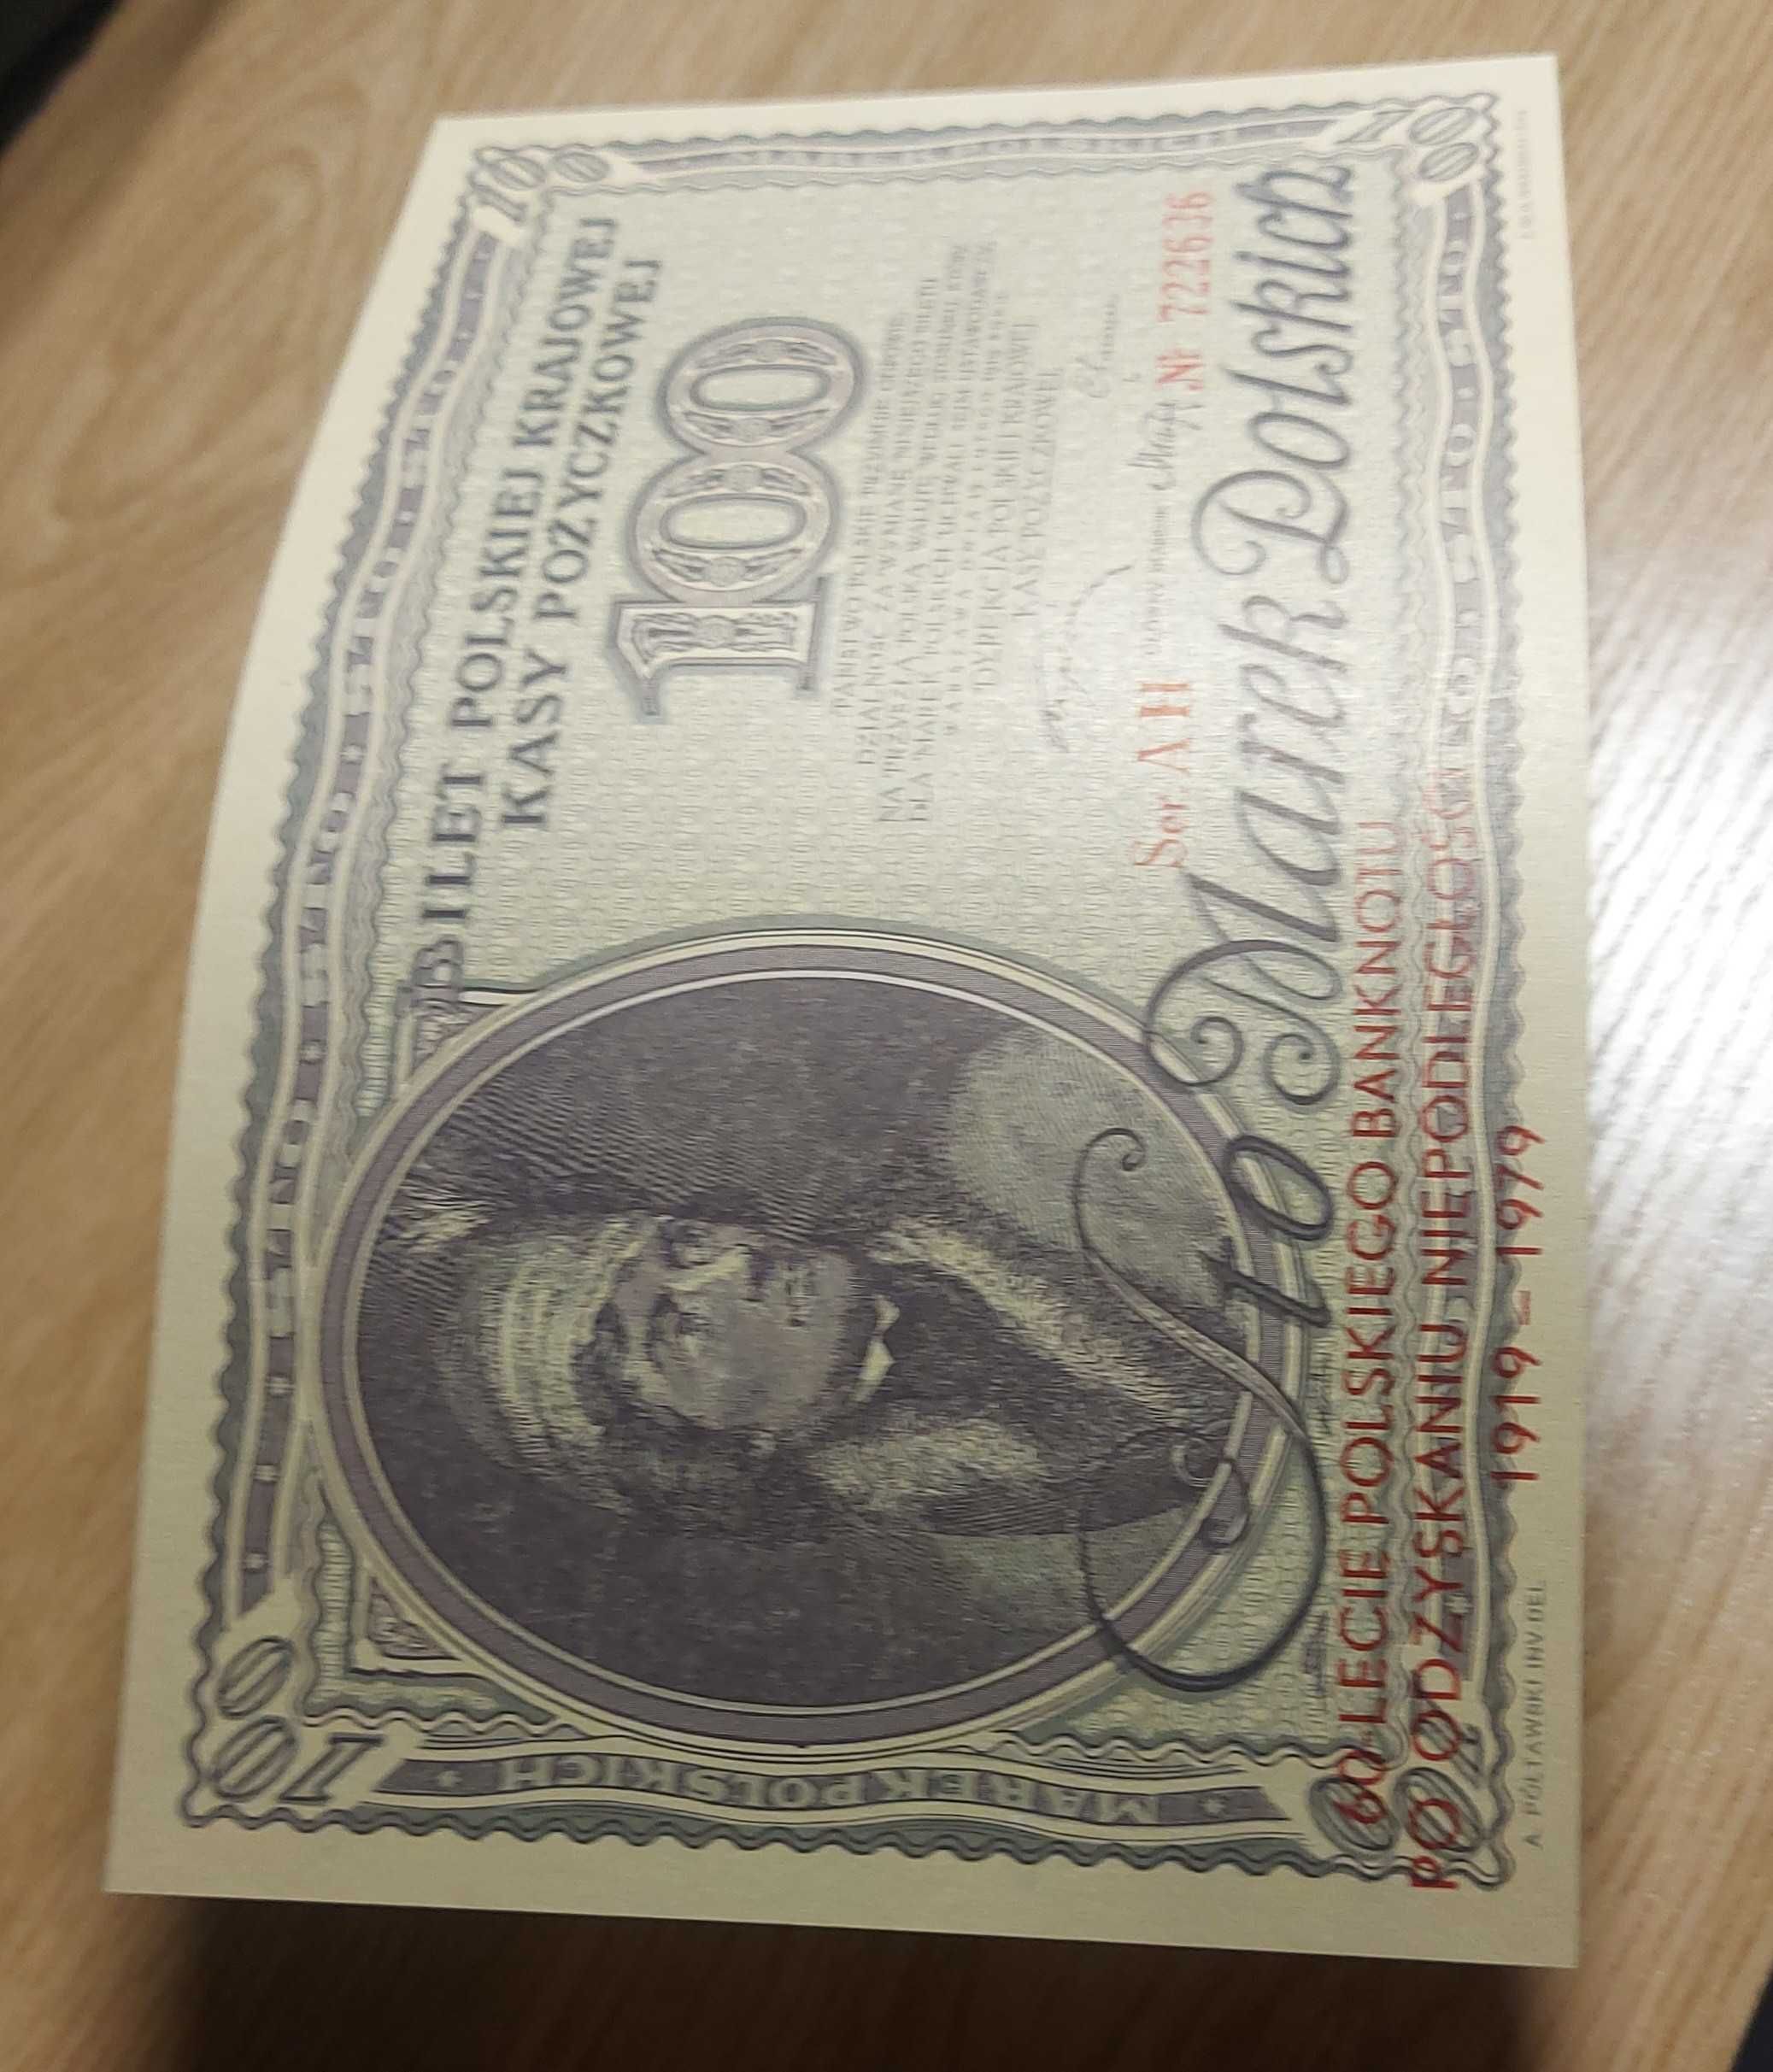 Reprodukcje banknotów 100 marek polskich - 2szt